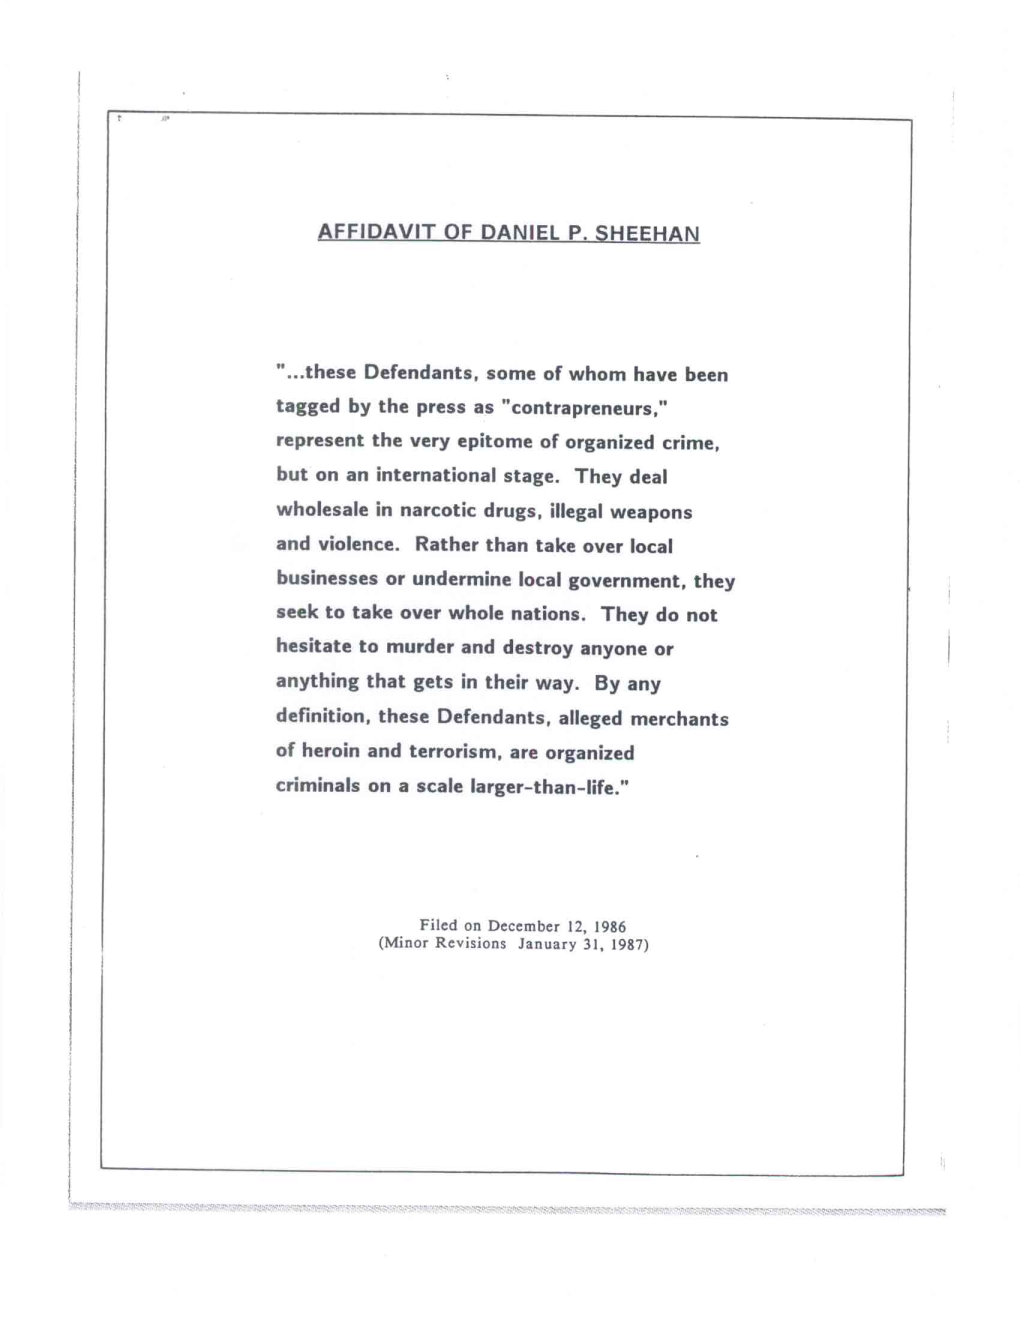 Affidavit of Daniel P. Sheehan